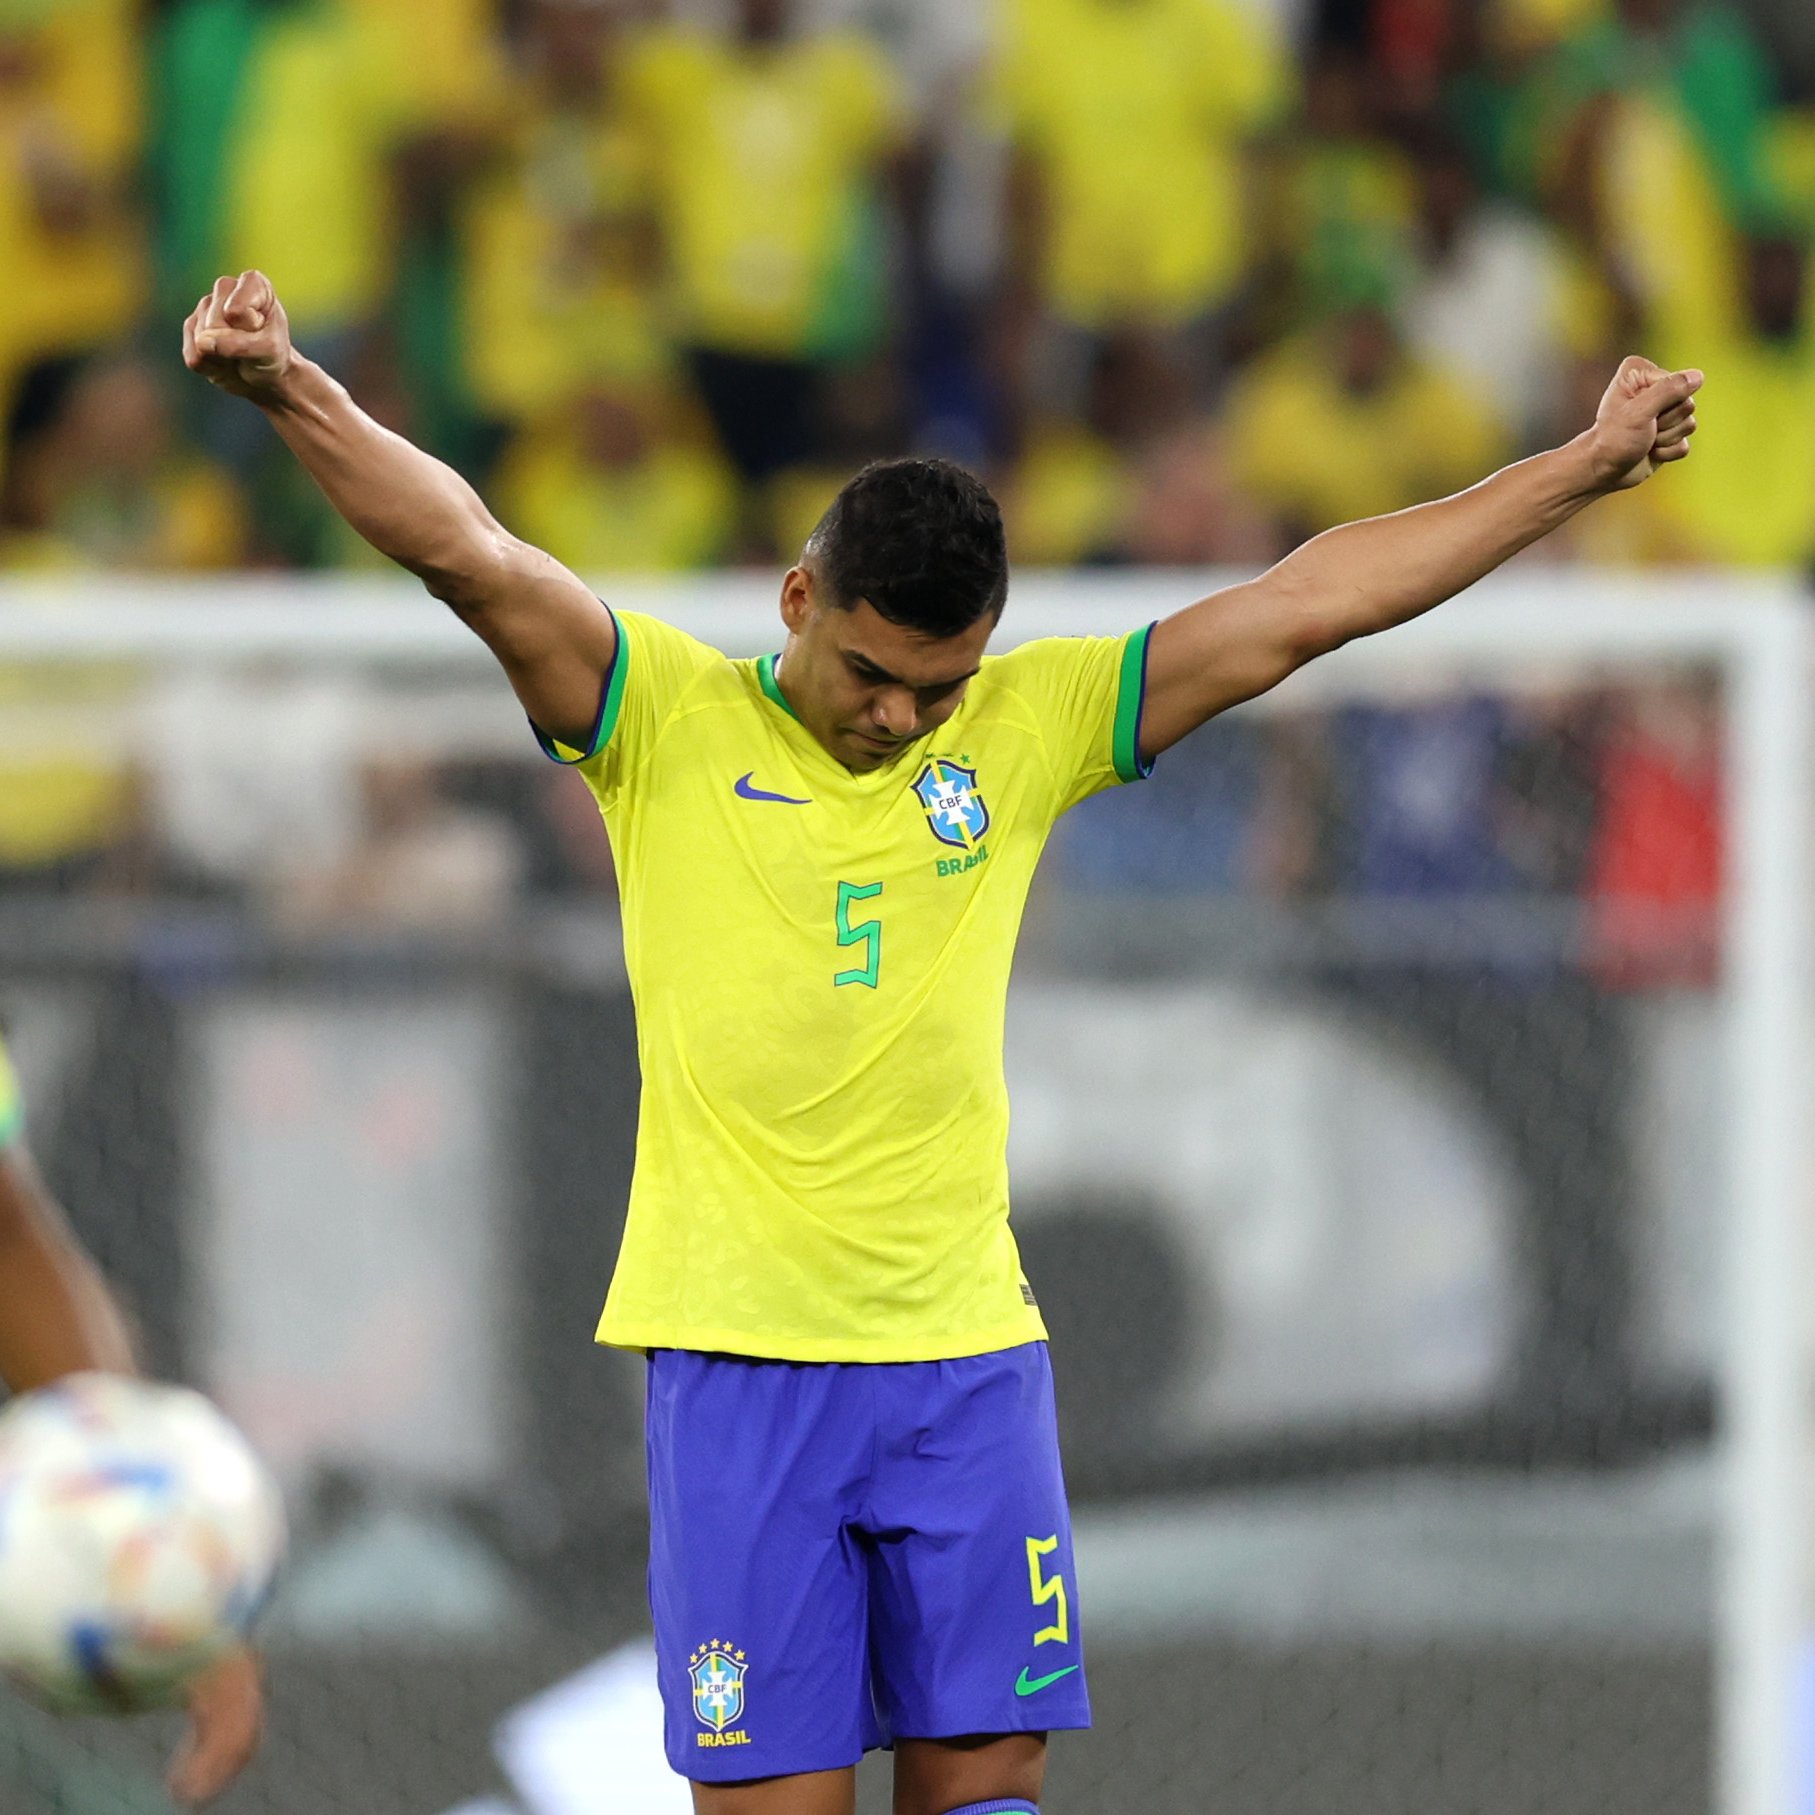 Brasil vence com gol de Casemiro e garante classificação na Copa